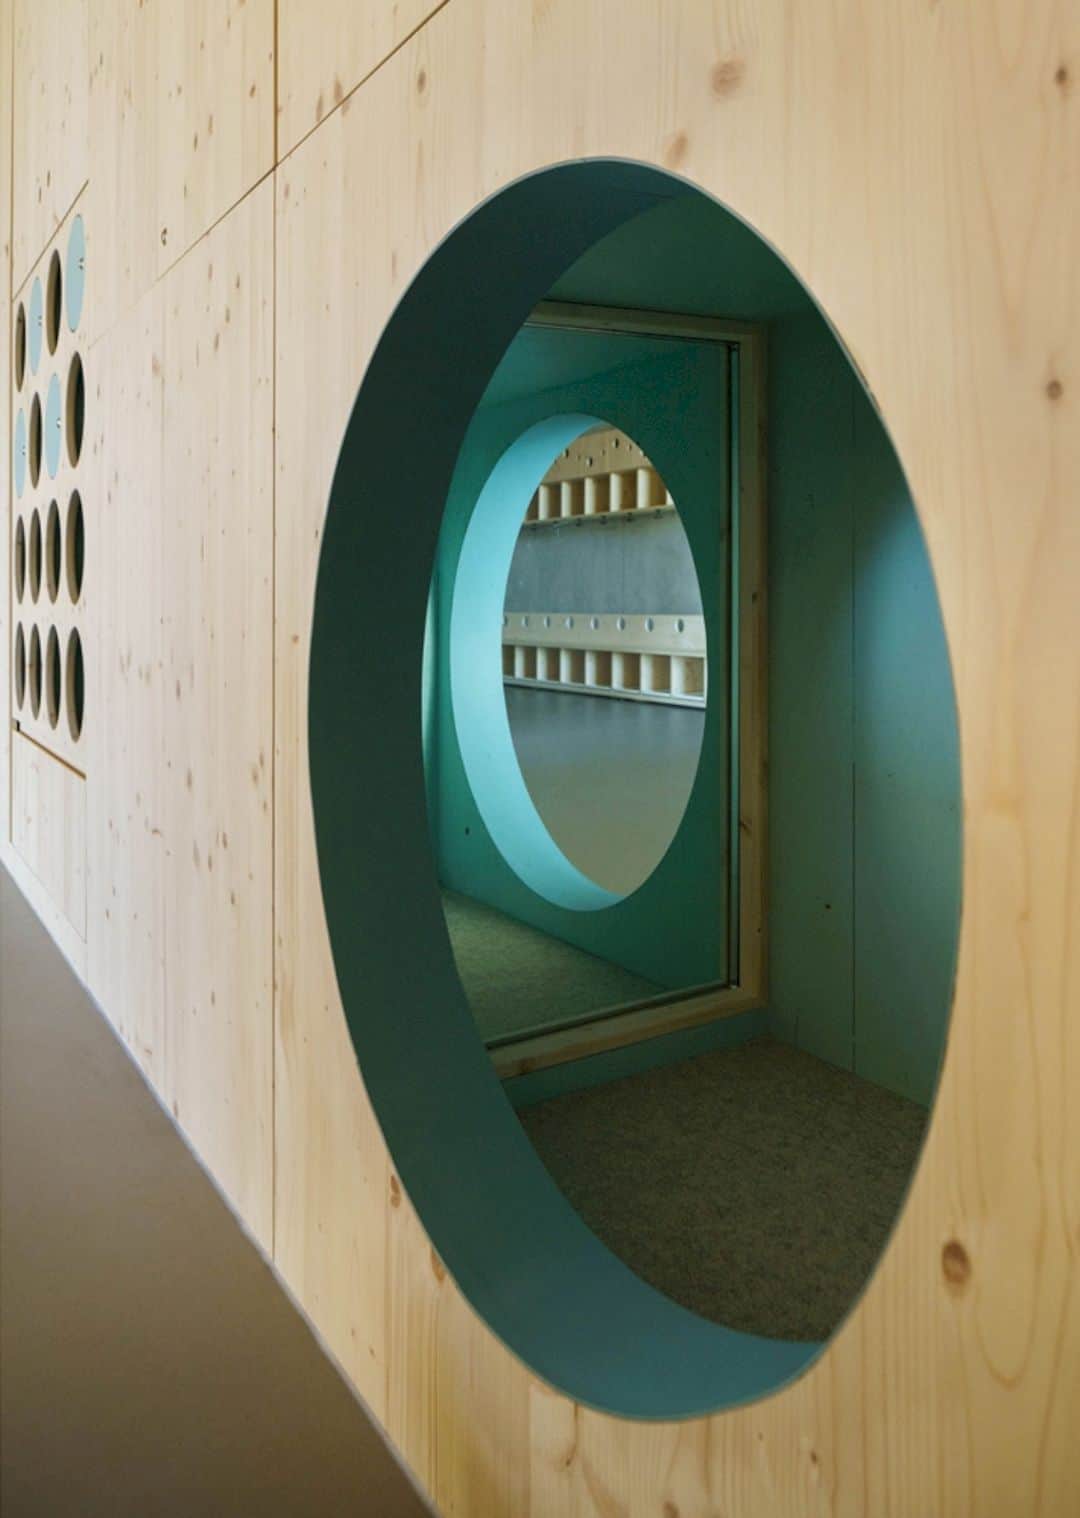 House For Children By Goldbrunner Architektur 2